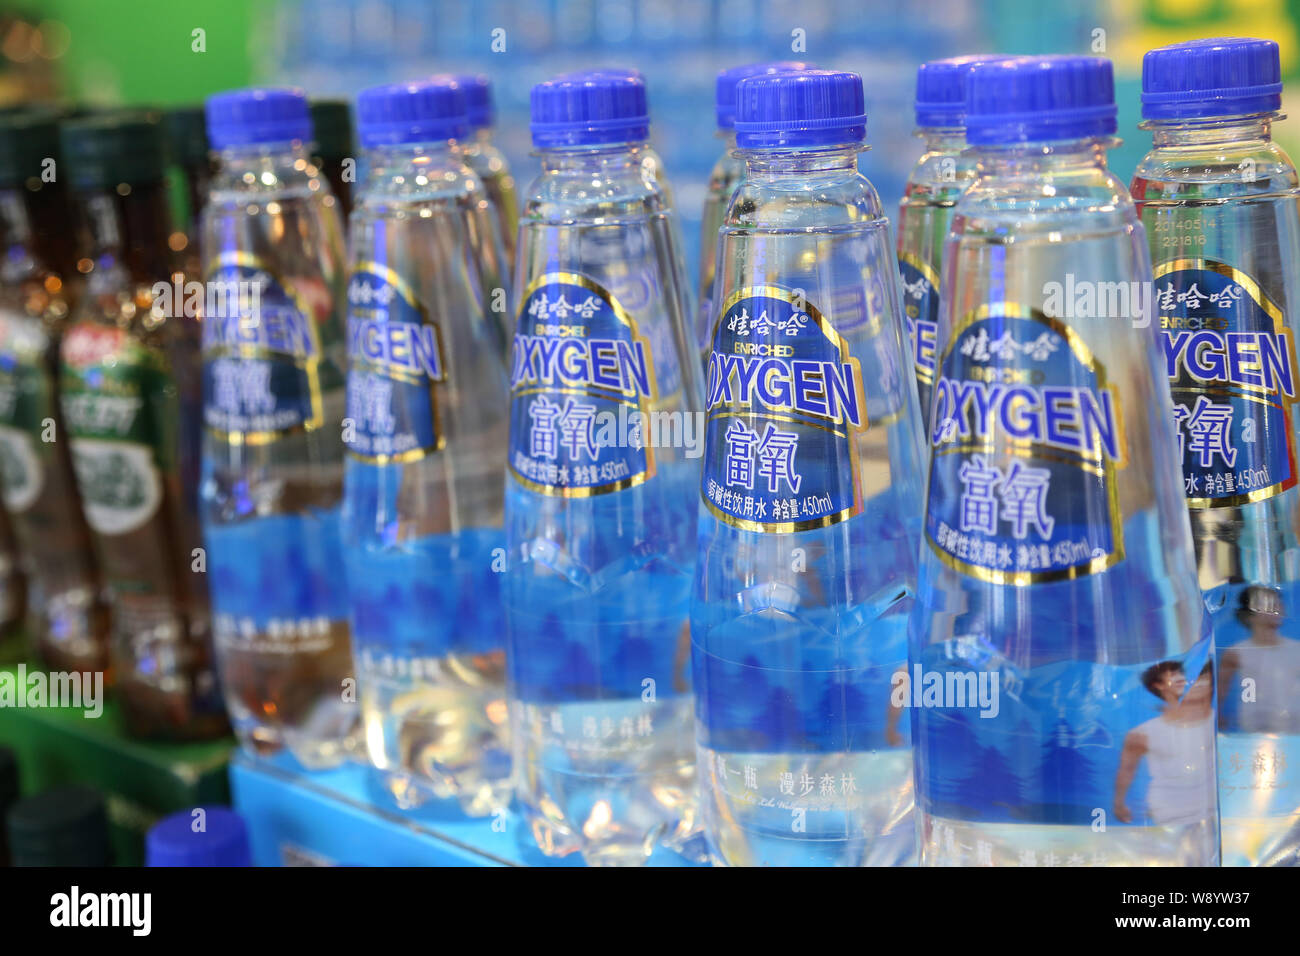 ------ Flaschen Wahaha Sauerstoff gereinigtes Wasser sind auf einer Messe in Shanghai, China, 16. November 2014 angezeigt. Fast ein Viertel der gereinigtes Trinkwasser Stockfoto